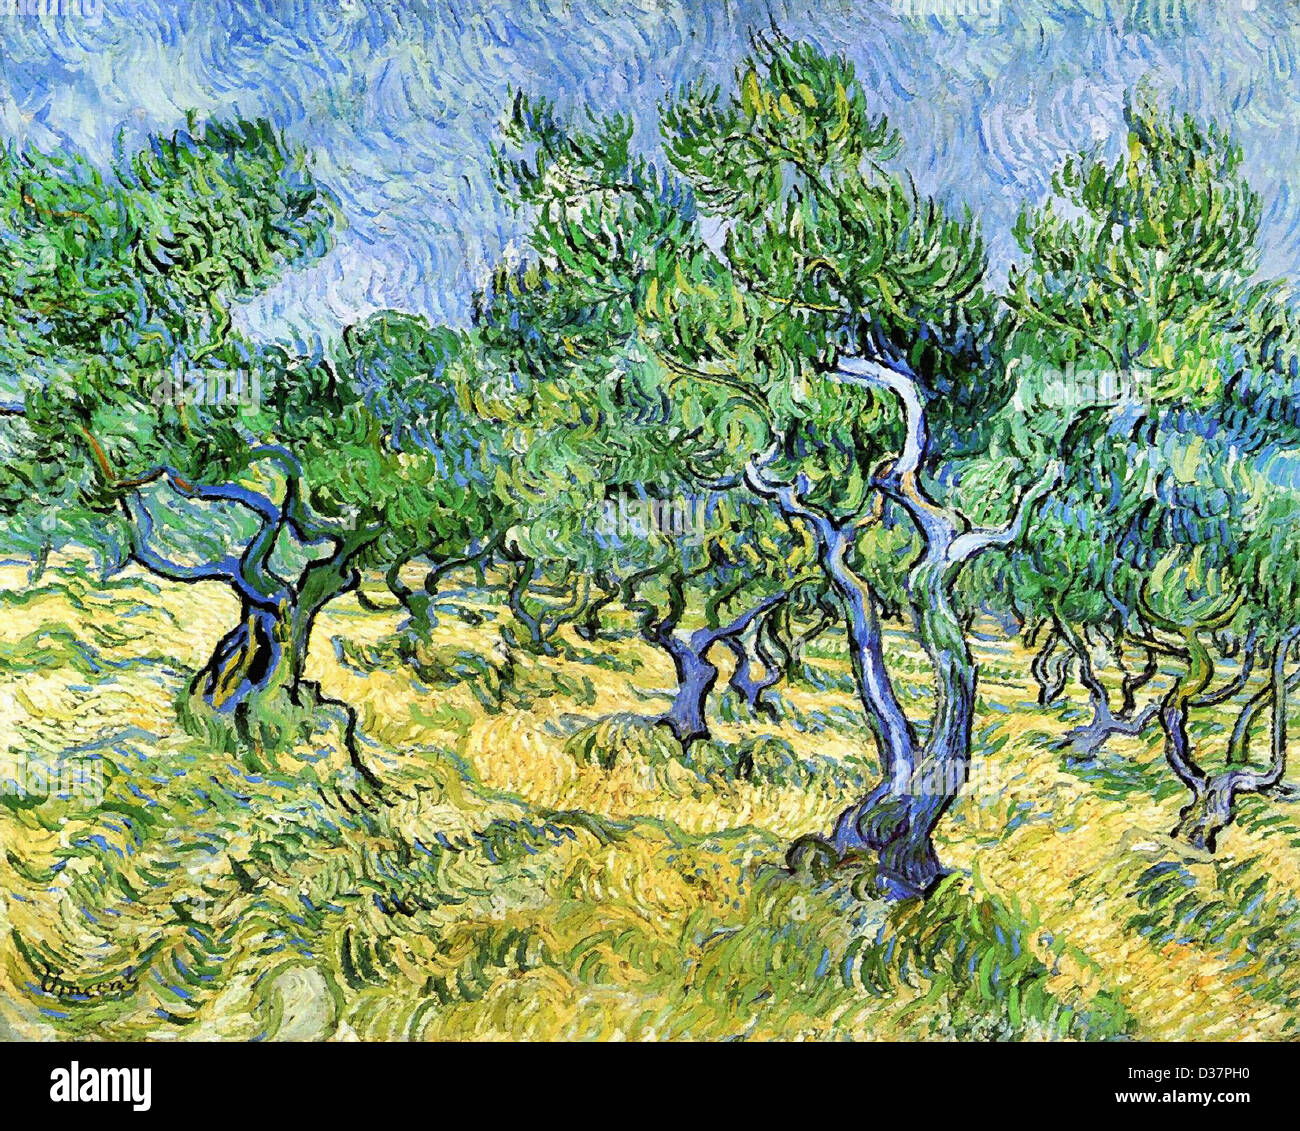 Vincent van Gogh, Olive Grove. 1889. Post-Impressionism. Oil on canvas. Rijksmuseum Kröller-Müller, Otterlo, Netherlands. Stock Photo